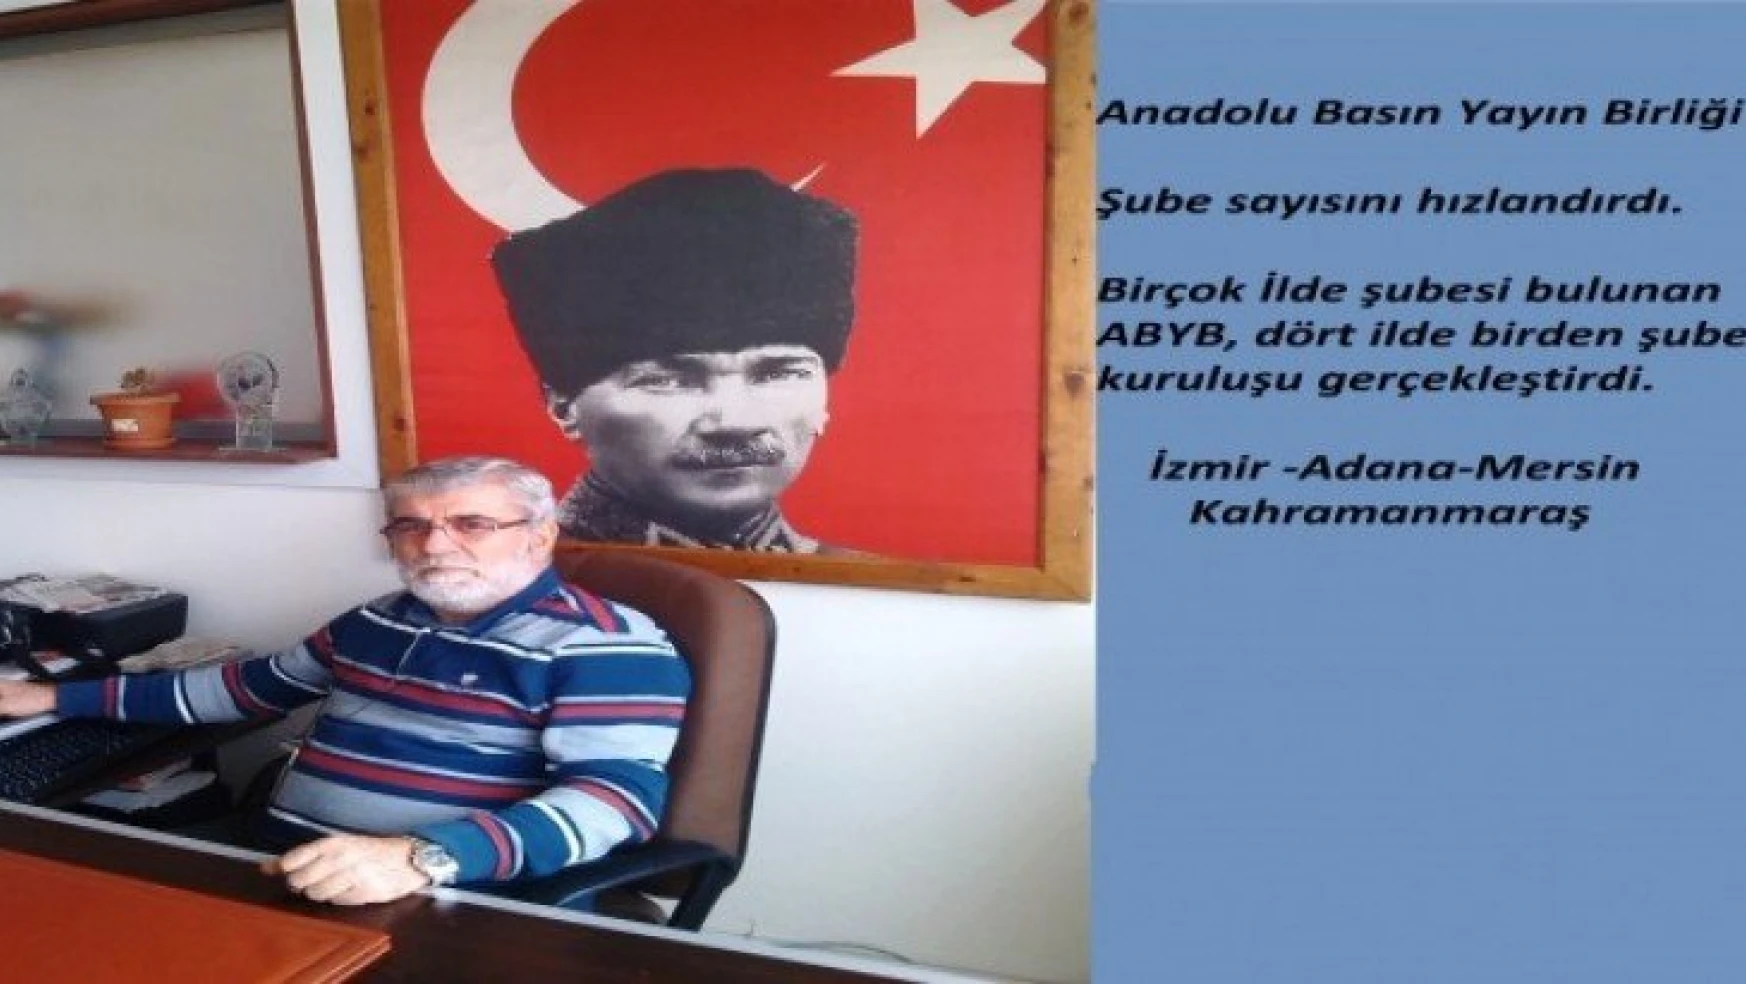 Anadolu Basın Yayın Birliği Şube kuruluşlarını hızlandırdı